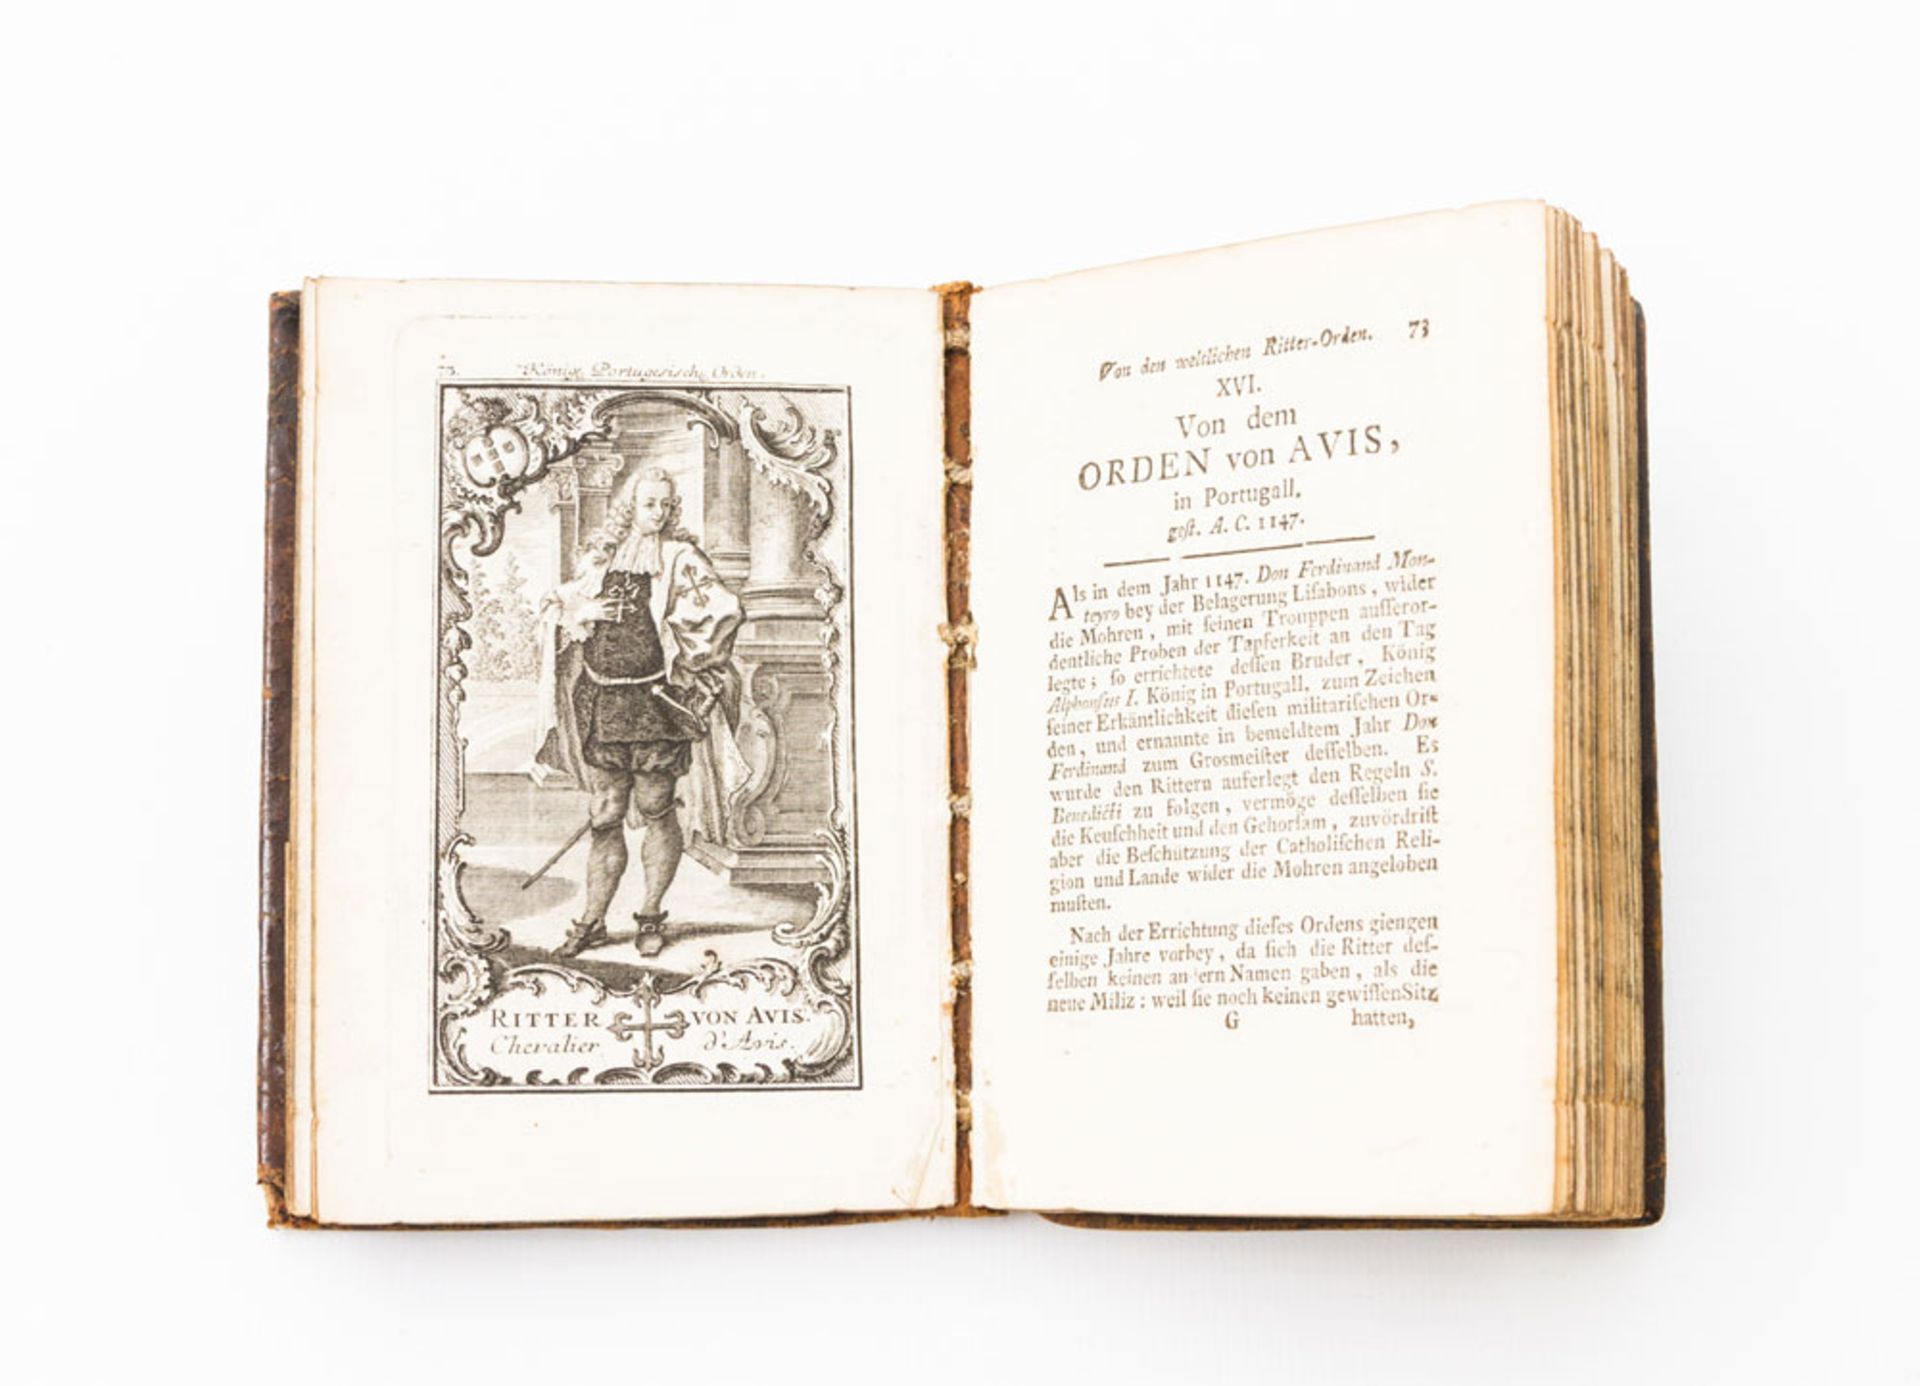 Historisches Buch "Abbildung und Beschreibung aller hohen Ritterorden in Europa" von Iacob Andreas